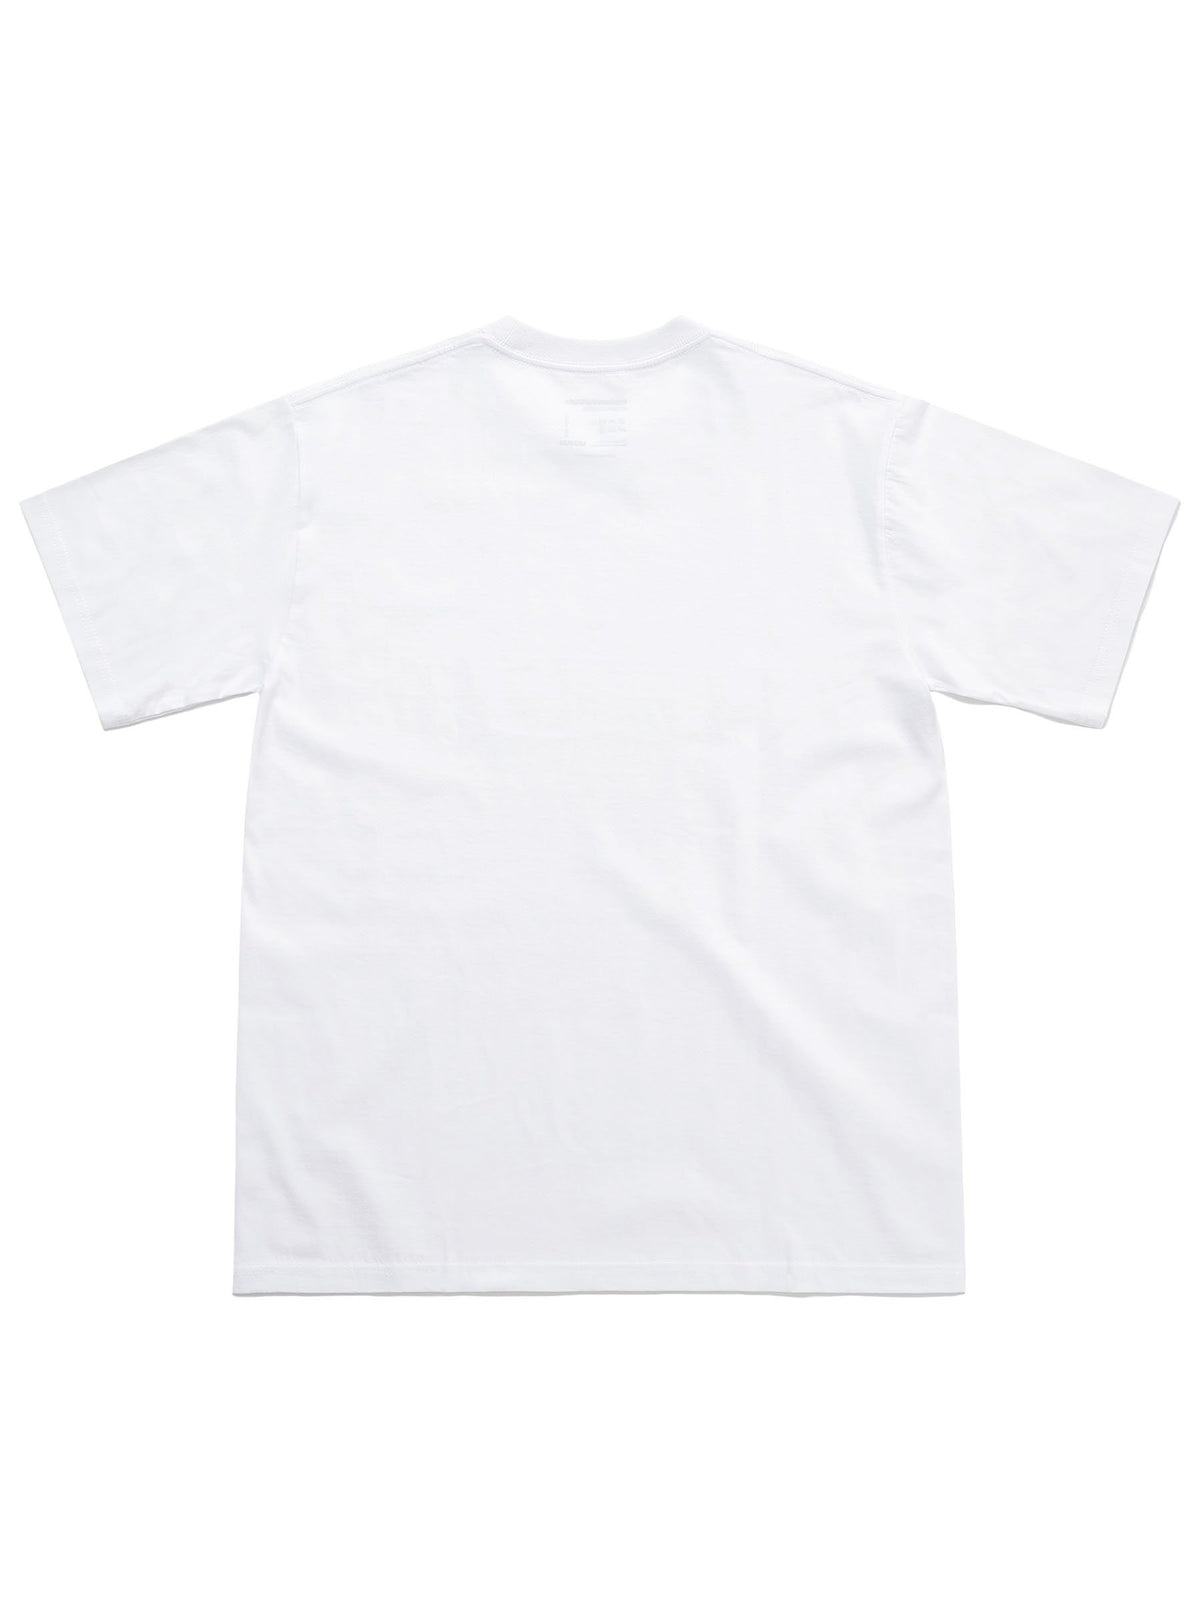 3 TAGLESS T-SHIRTS T-Shirt